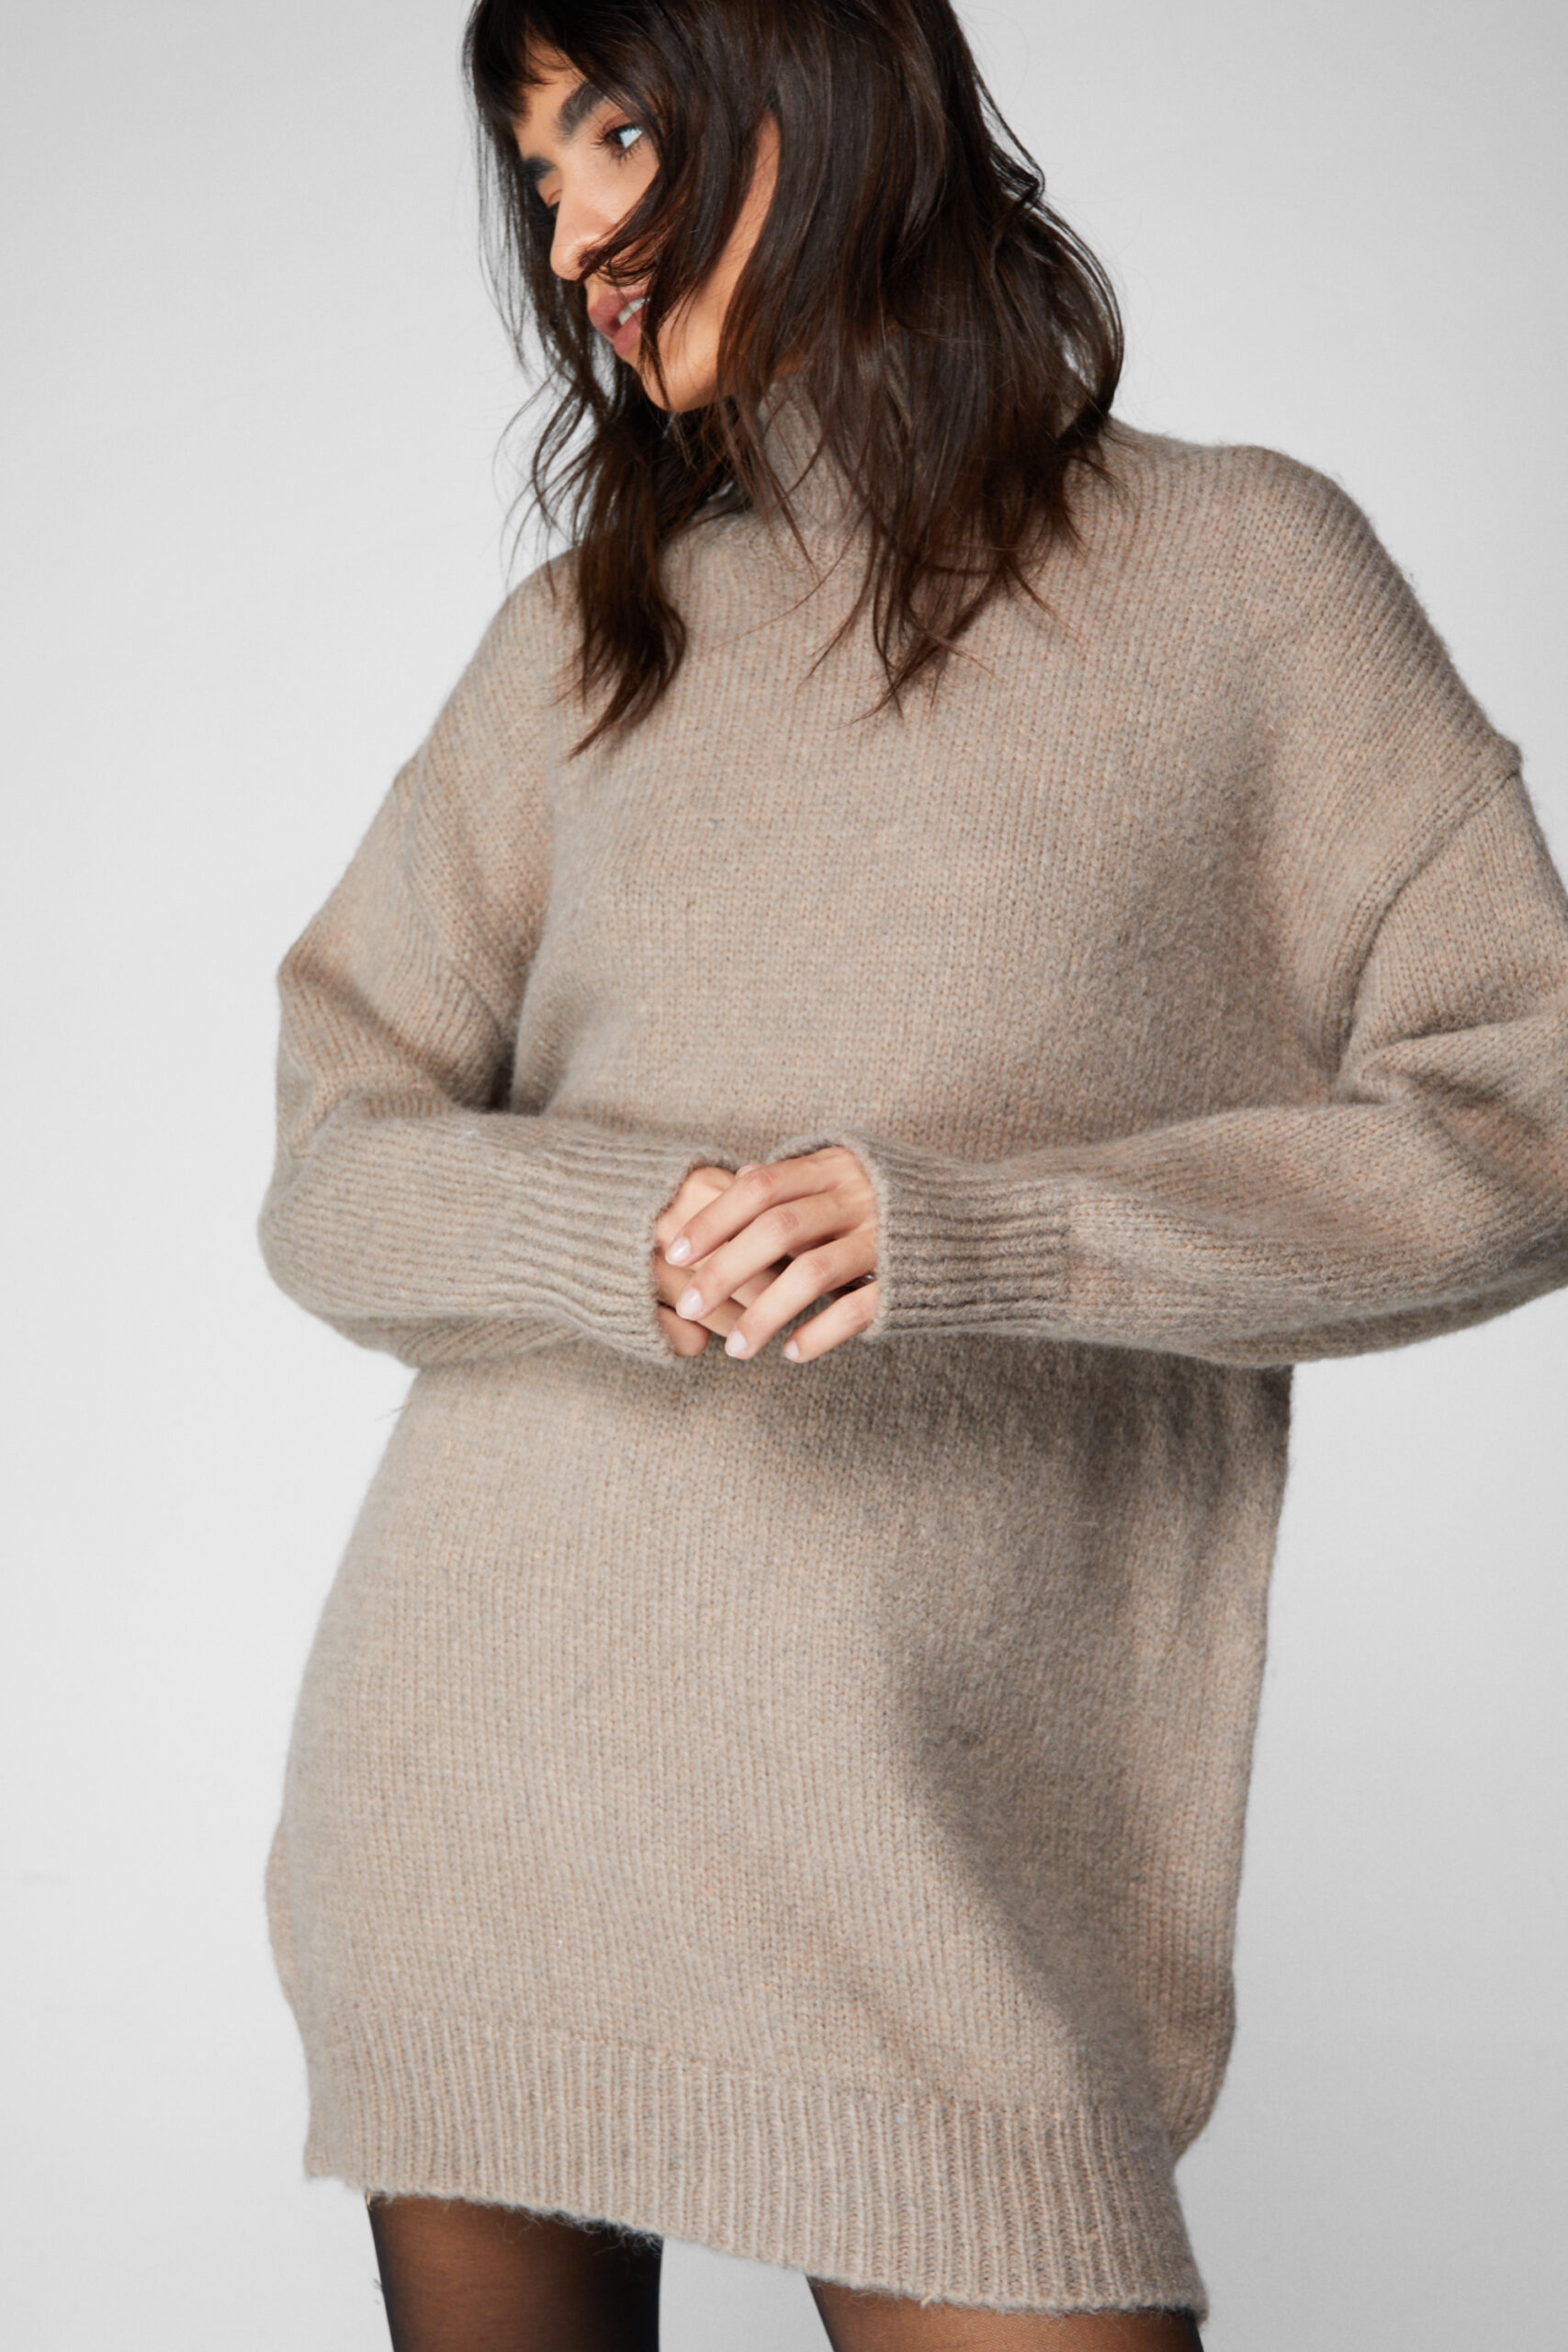 Brushed Knit Oversized Turtleneck Sweater Dress